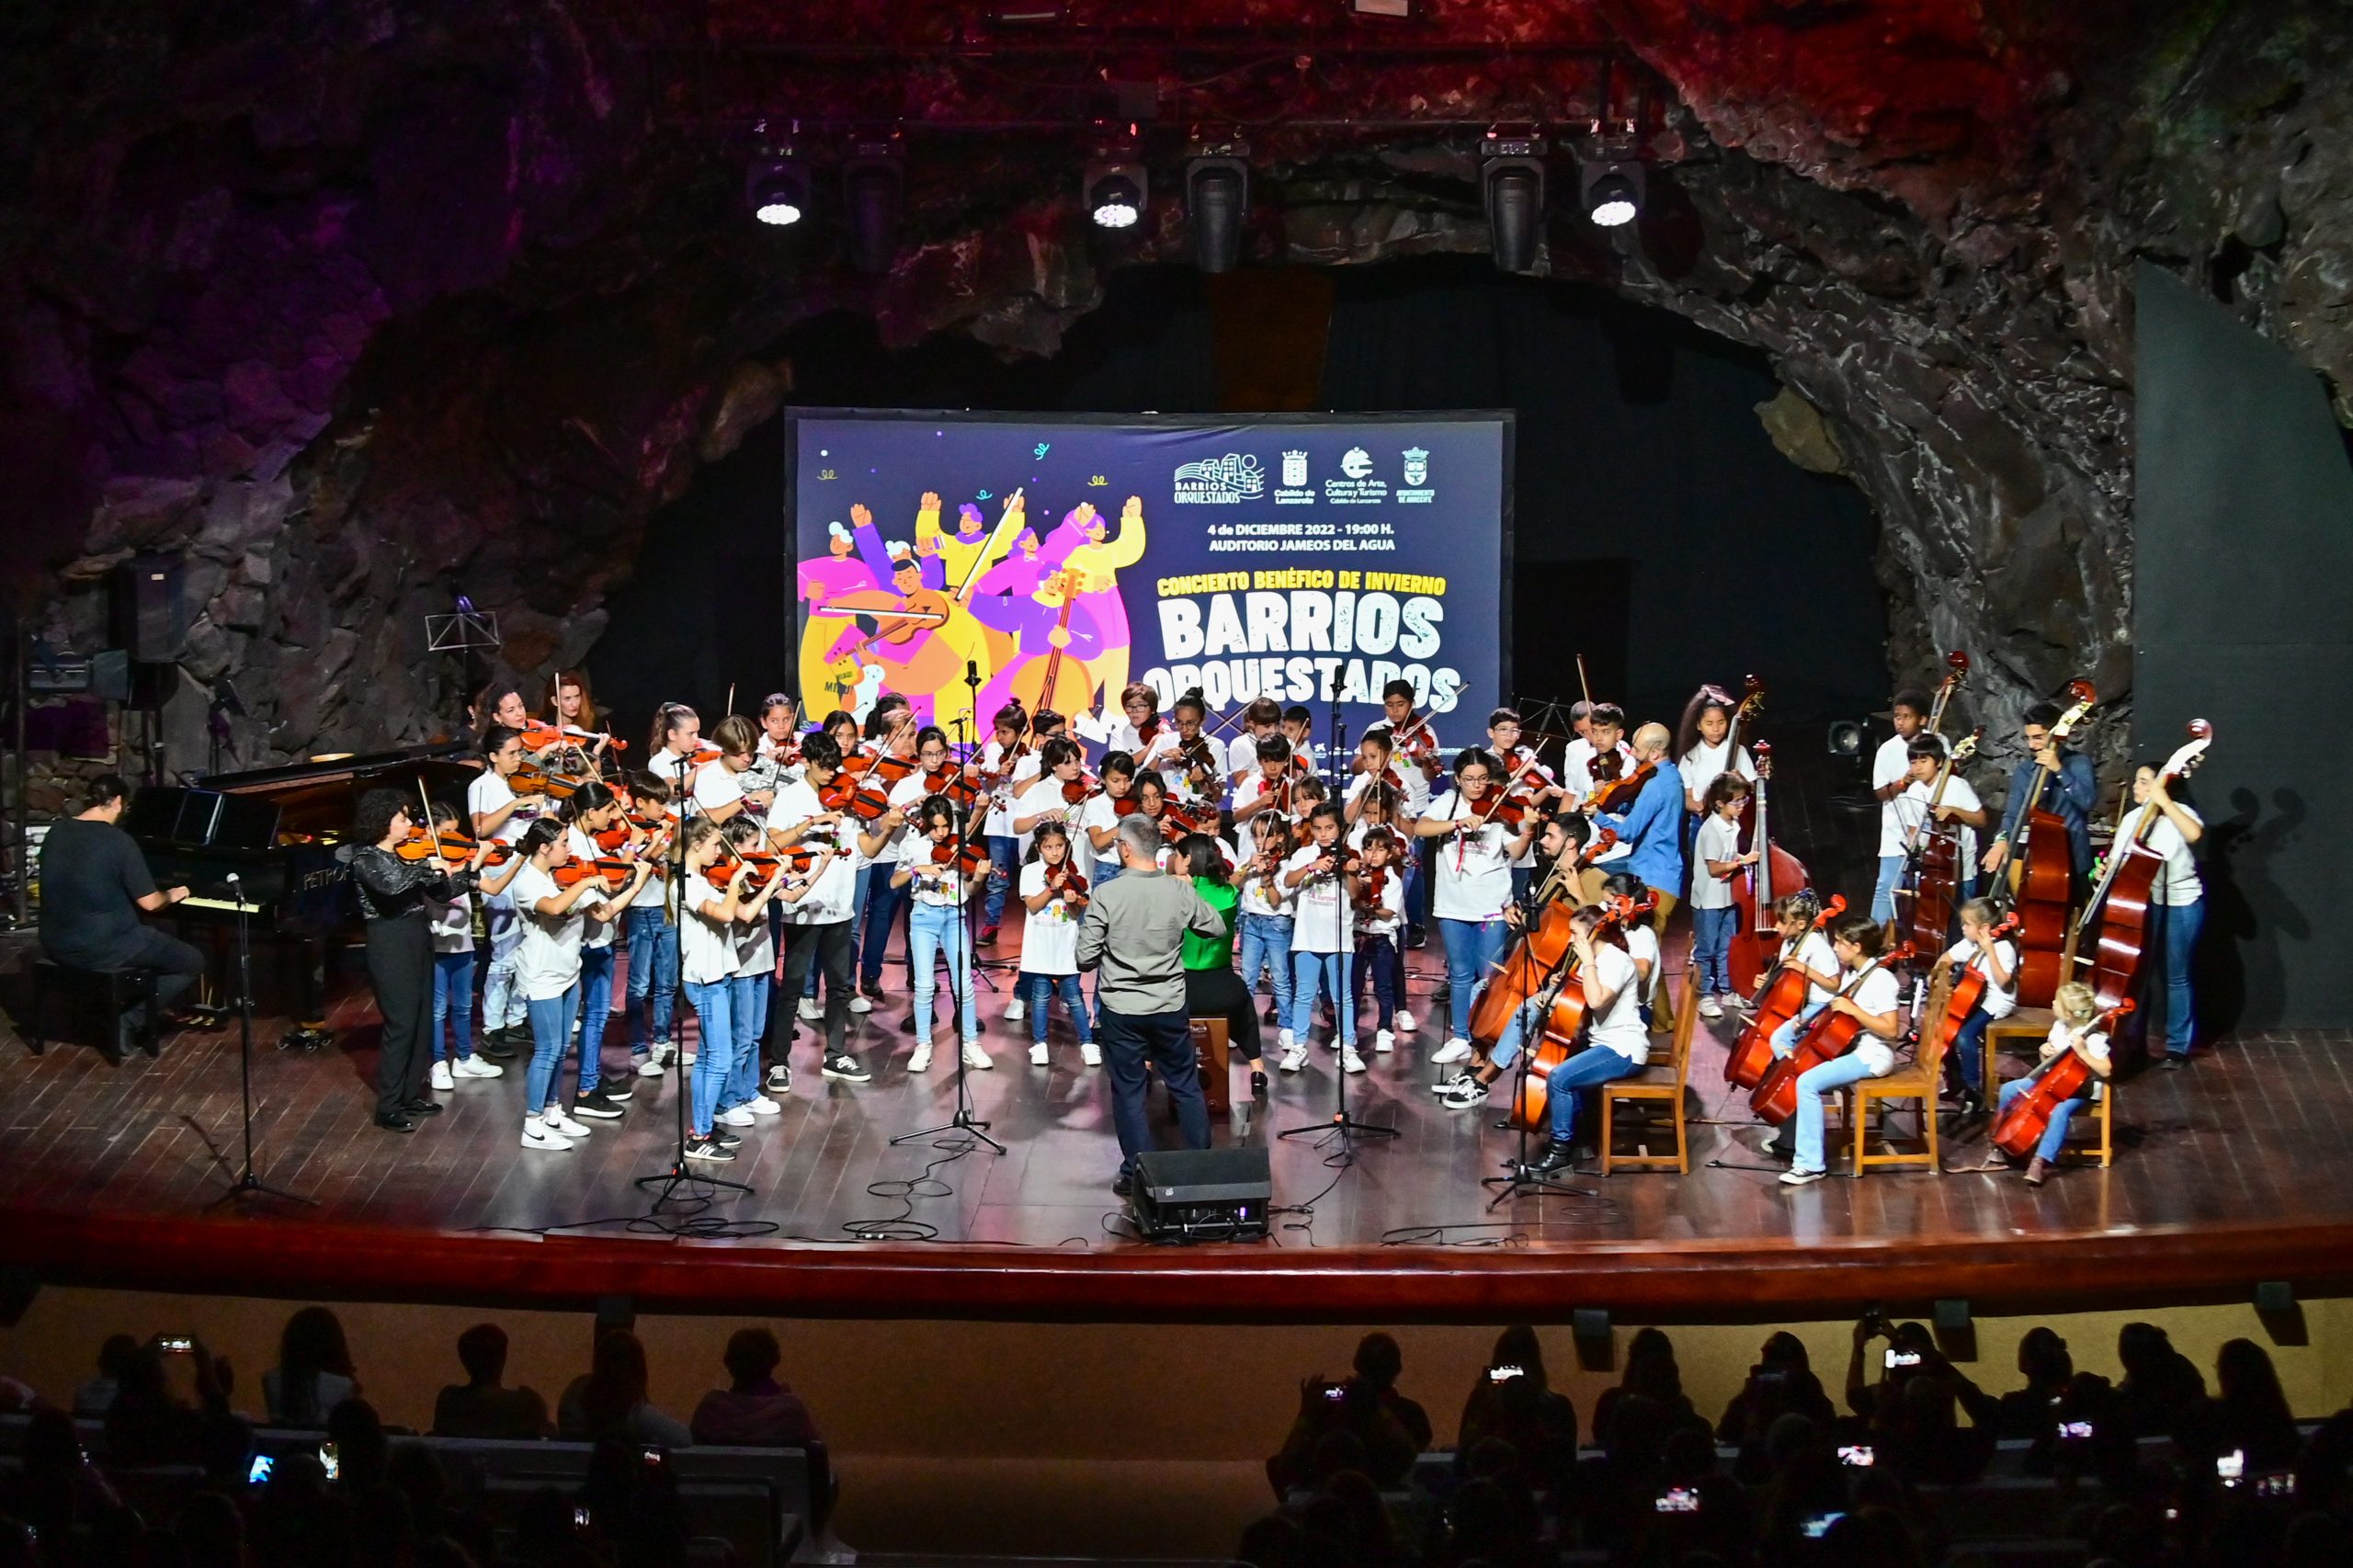 La orquesta de Barrios Orquestados celebra su concierto benéfico anual en Jameos del Agua